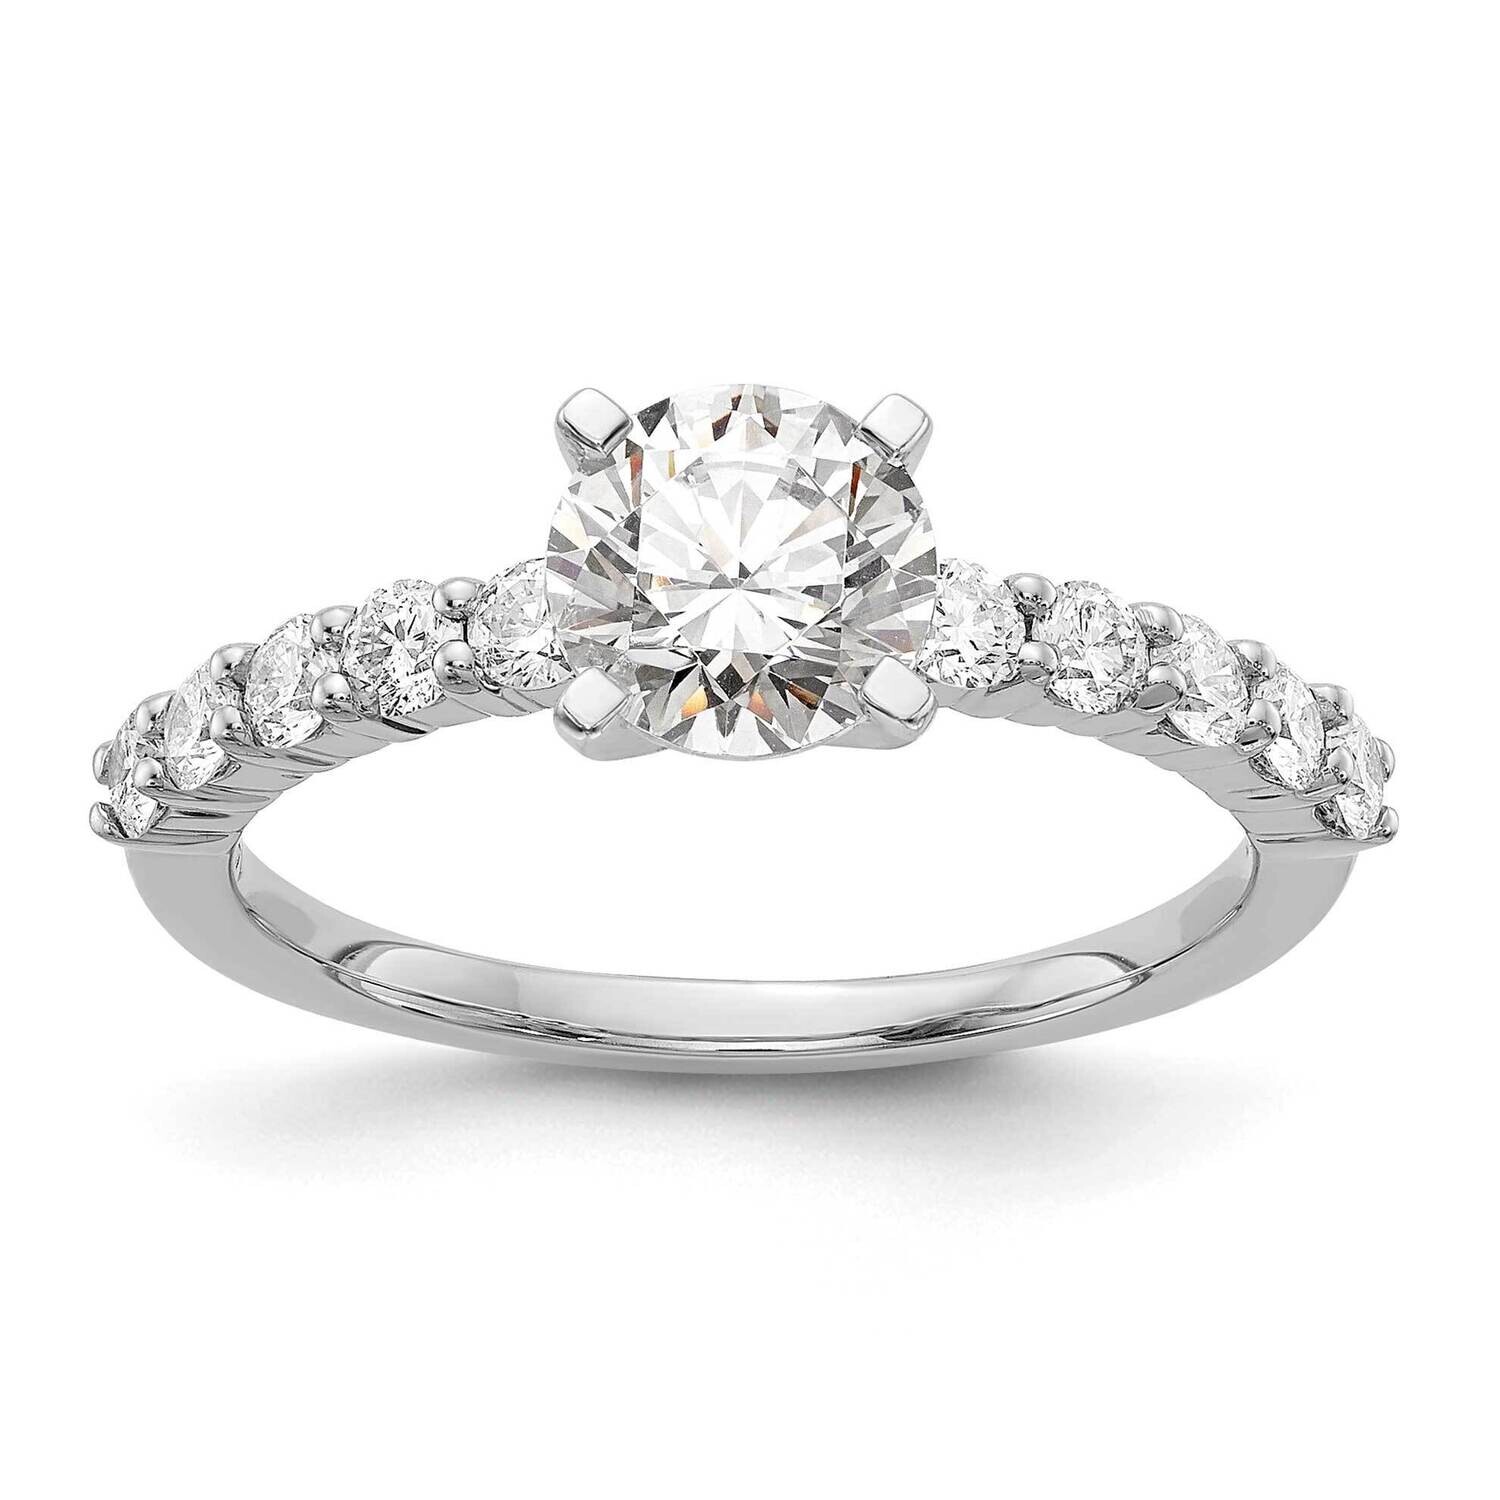 Peg Set 1/2 Carat Diamond Semi-Mount Engagement Ring 14k White Gold RM2938E-050-WAA